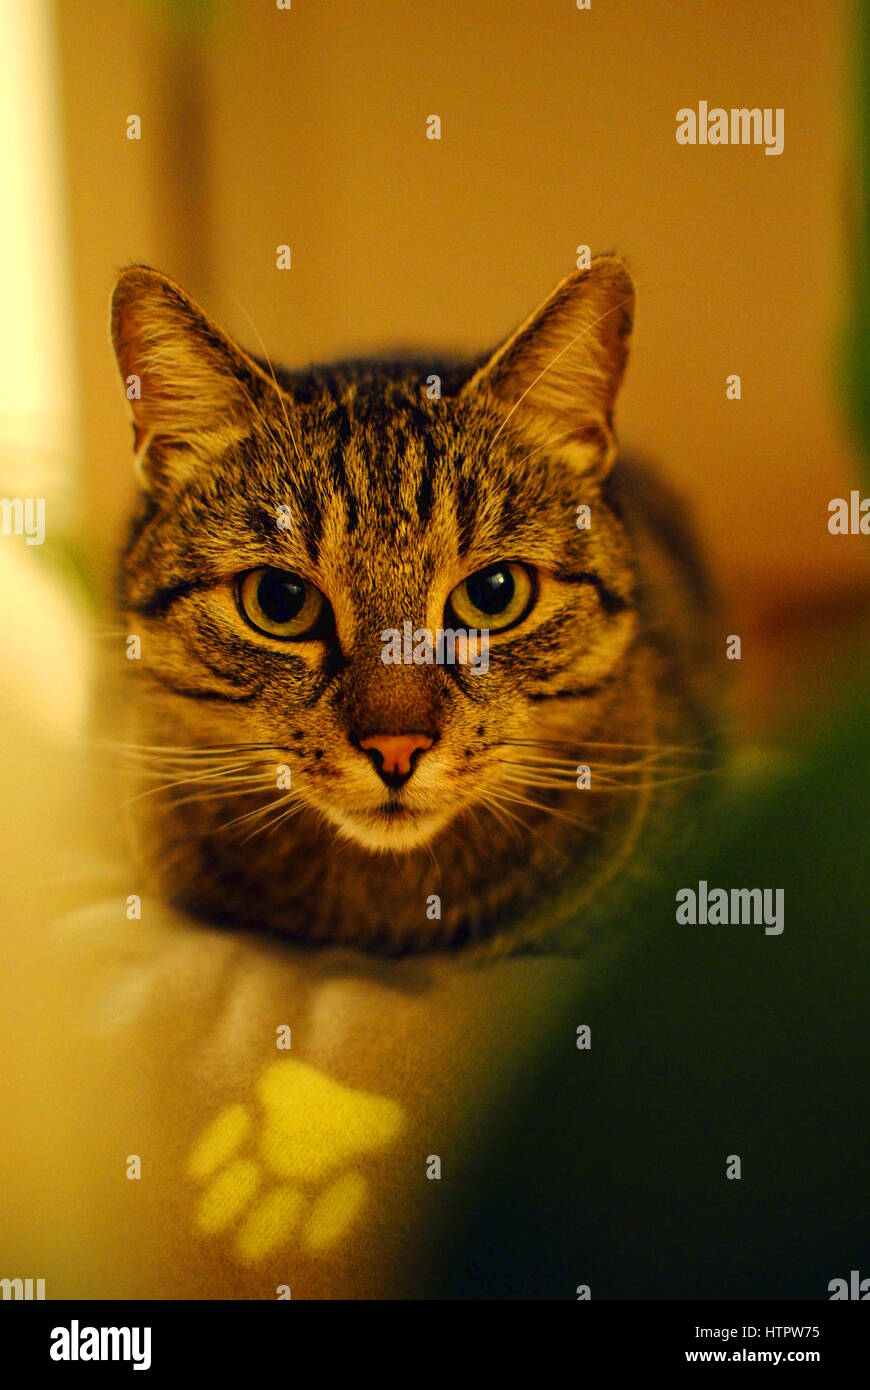 tabby cat looking into camera Stock Photo